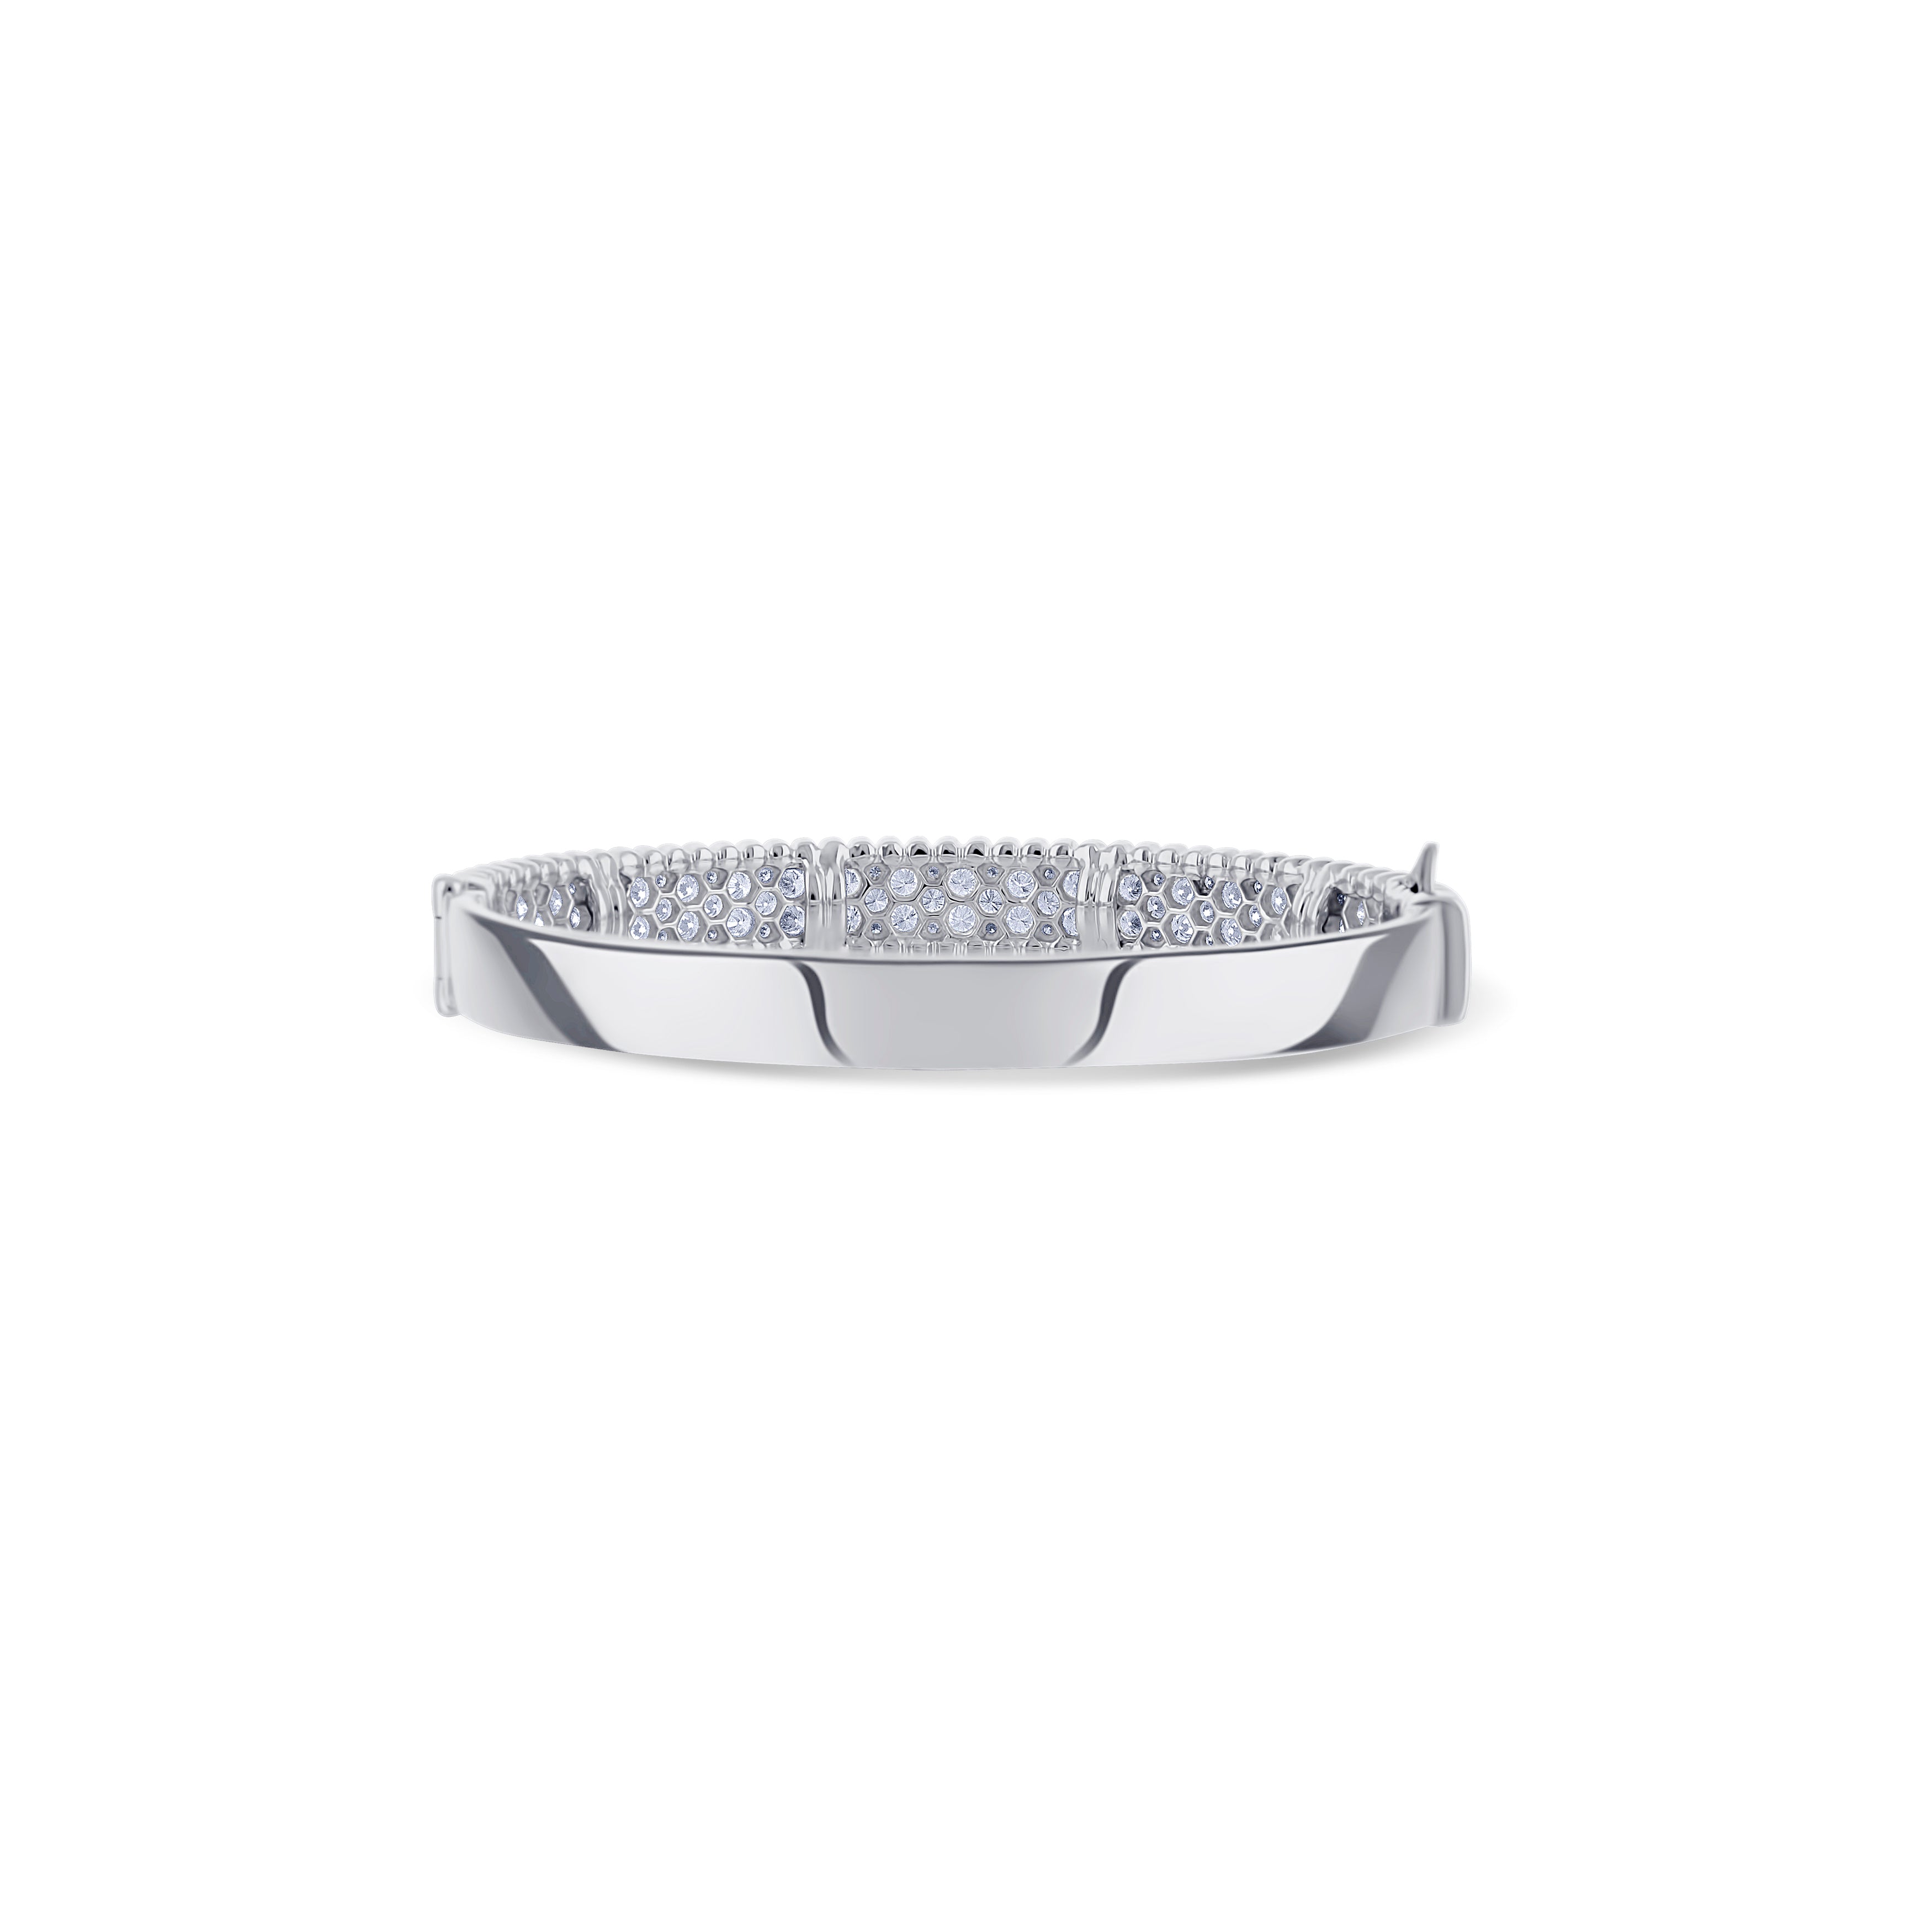 18K White Gold Double Diamond Row with Bead Design Bracelet